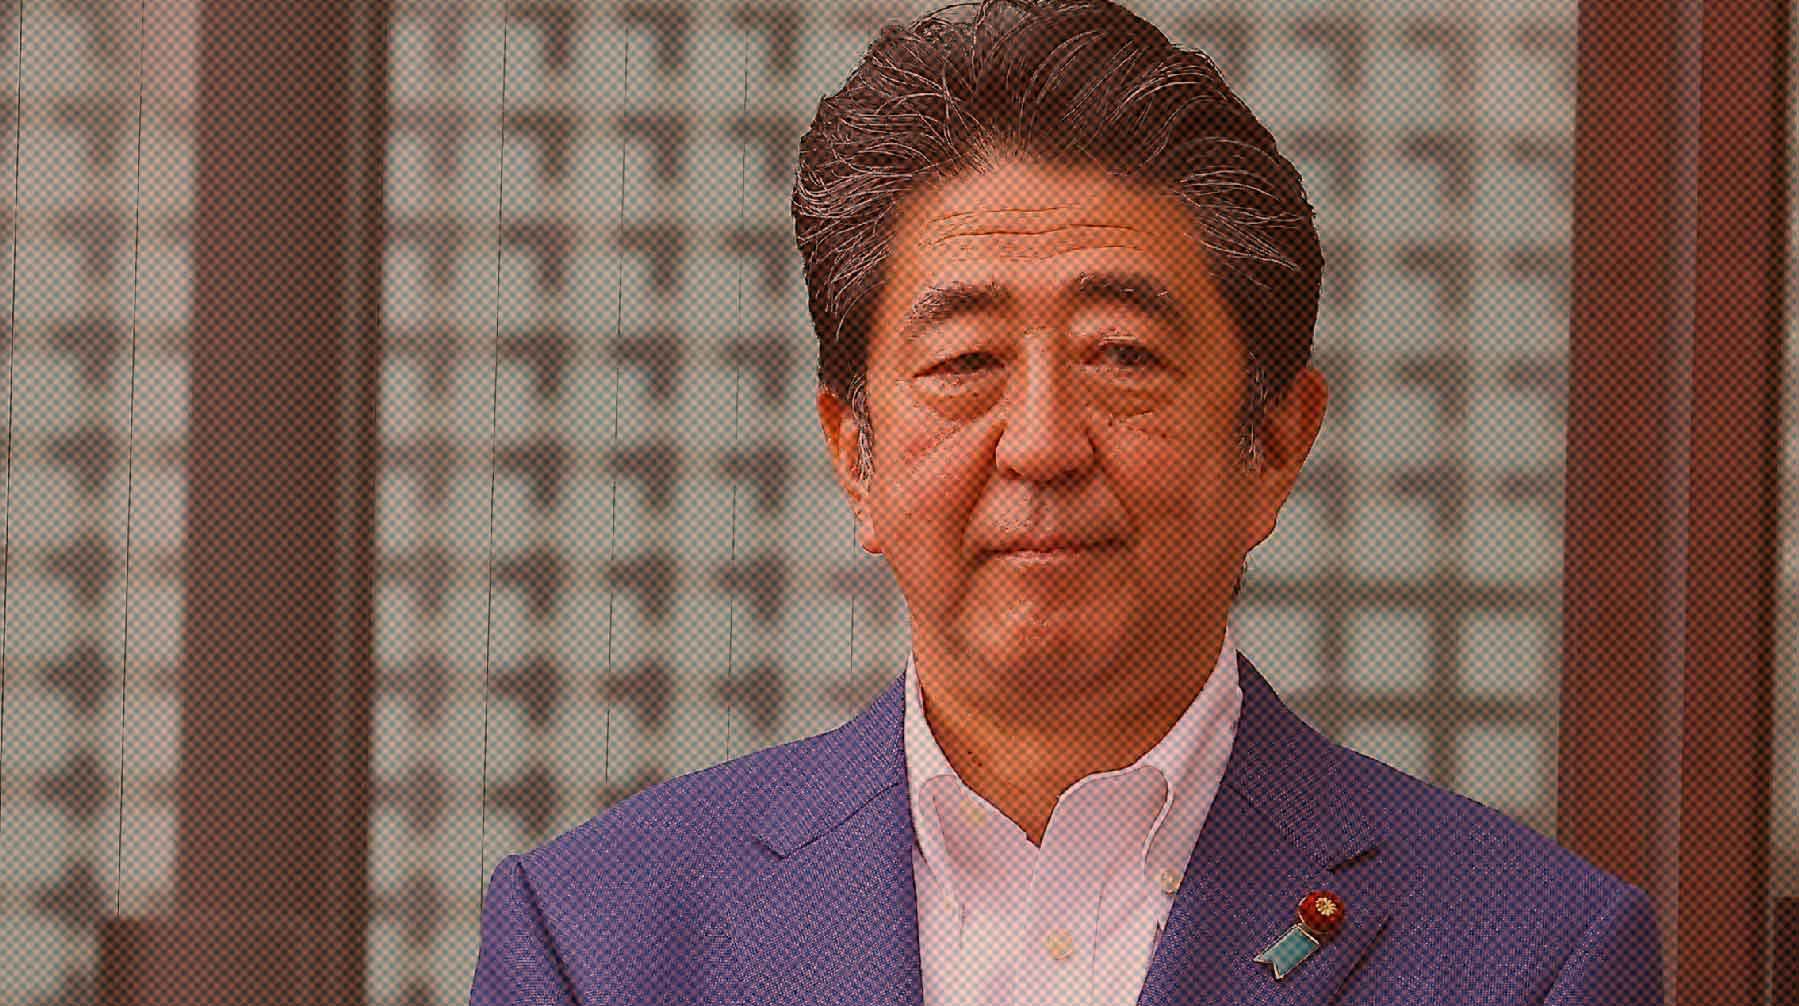 Dailystorm - Хотел убить Абэ из-за плохой политики: стрелявший в экс-премьера Японии дал первые показания полиции